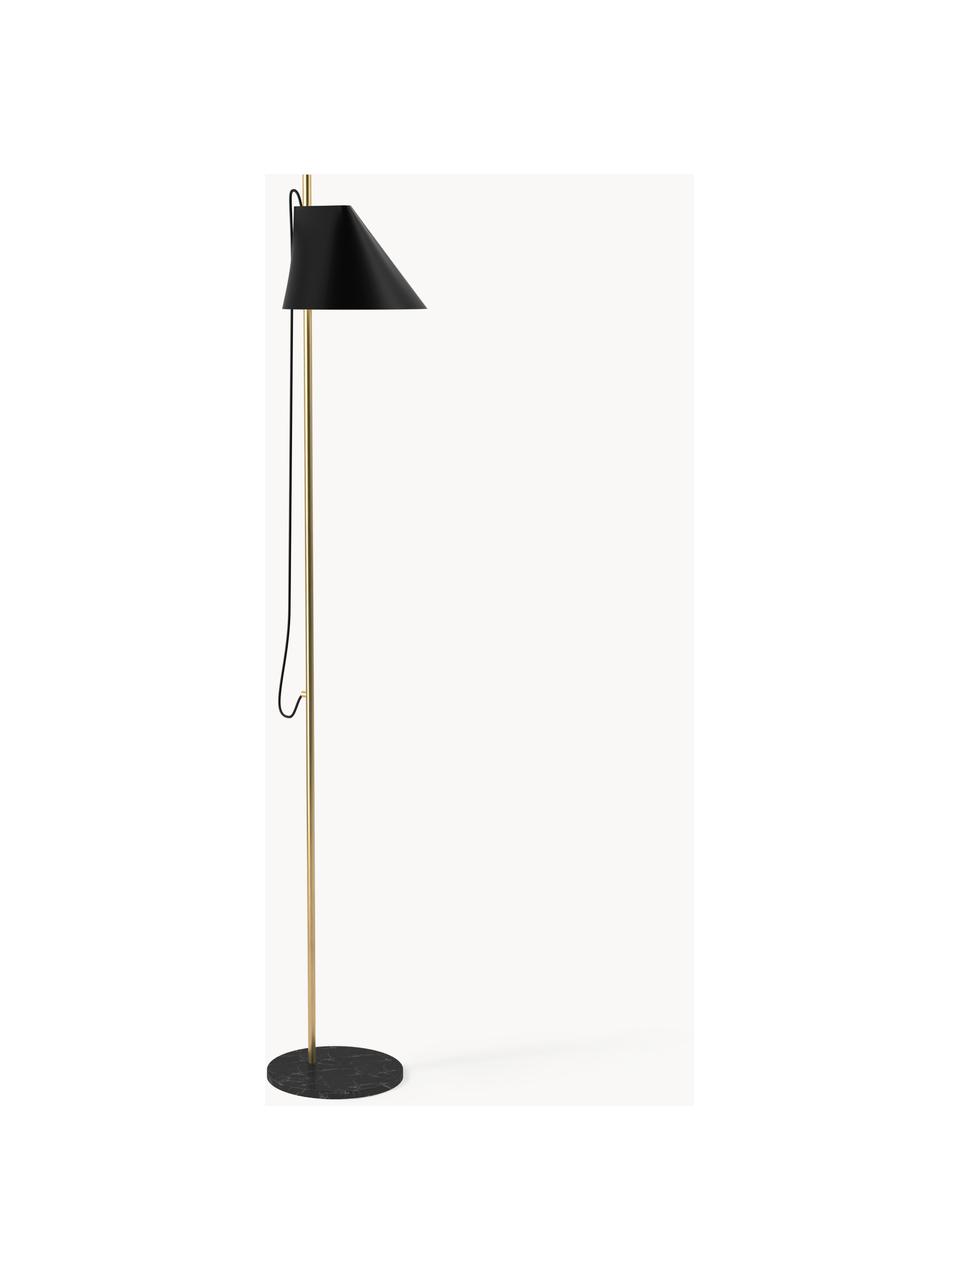 Lampa podłogowa LED z funkcją przyciemniania Yuh, Stelaż: mosiądz szczotkowany, Czarny, marmurowy, mosiężny, W 140 cm